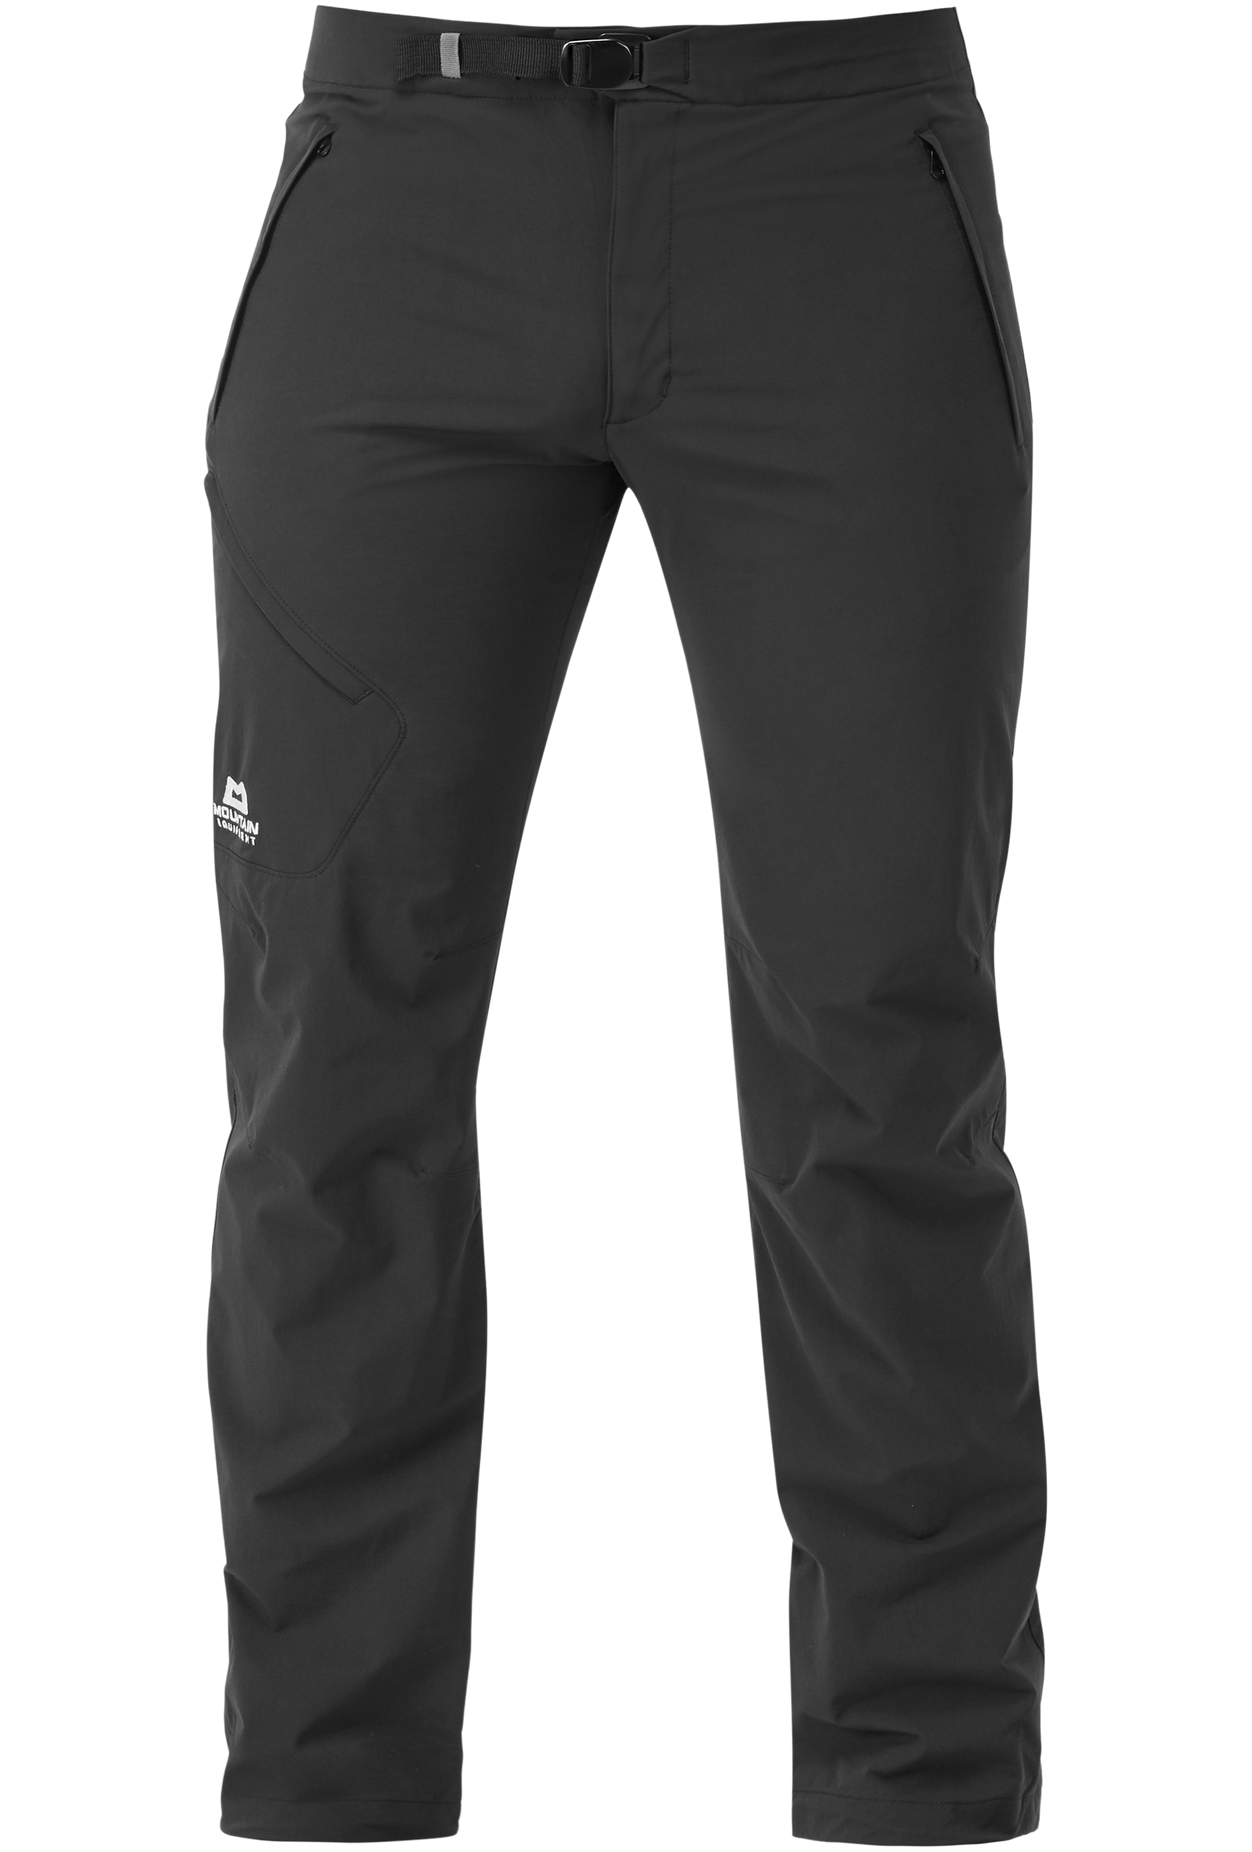 Mountain Equipment pánské softshellové kalhoty Comici Pant - prodloužené Barva: black/black, Velikost: 38/XXL